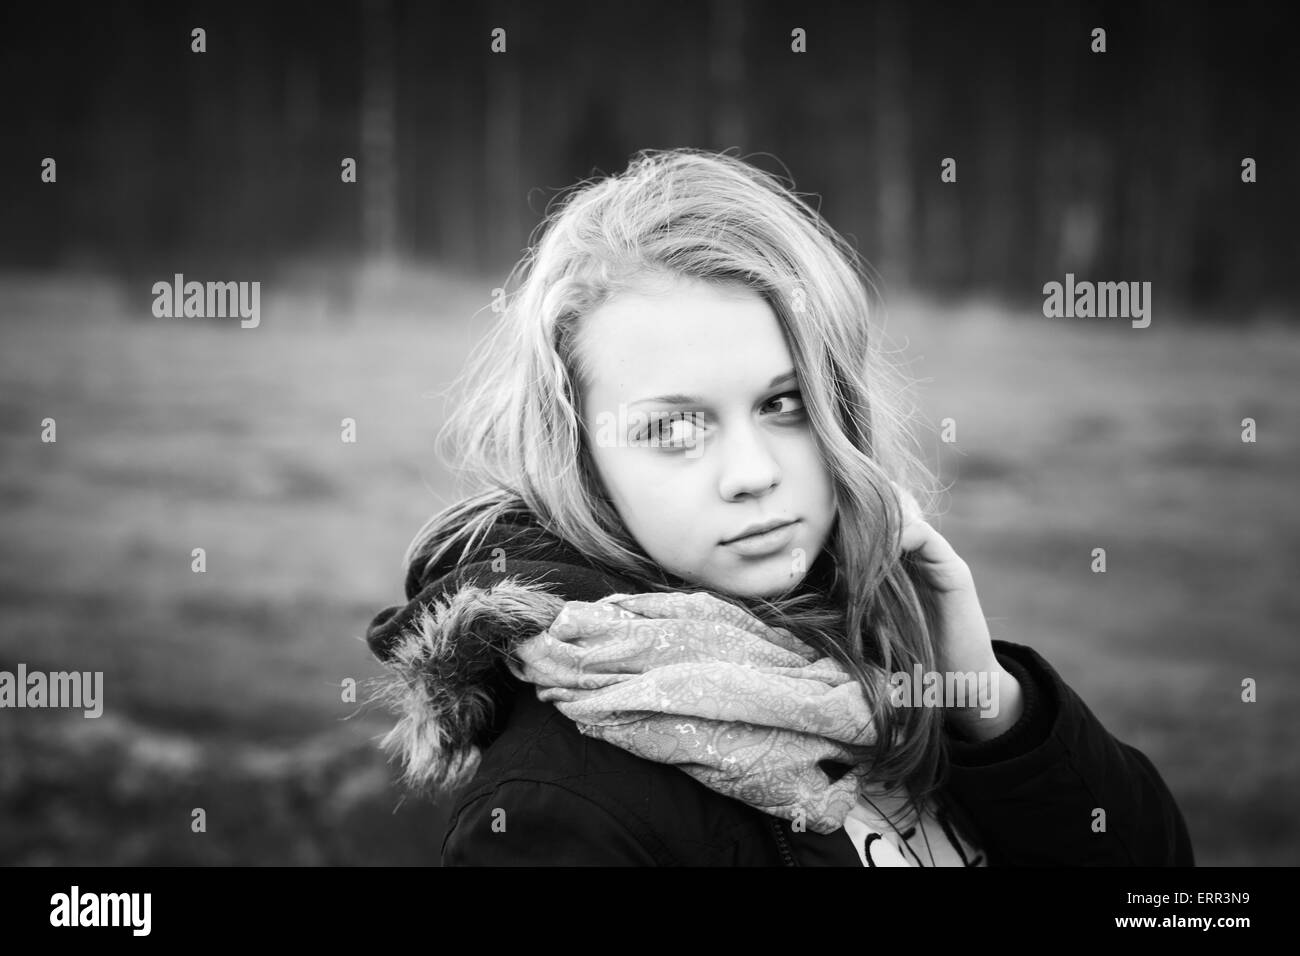 Nahaufnahme Outdoor-Porträt von schönen blonden kaukasischen Teenager-Mädchen in einem Frühlingswald, stilisierte Schwarz / weiß Foto Stockfoto